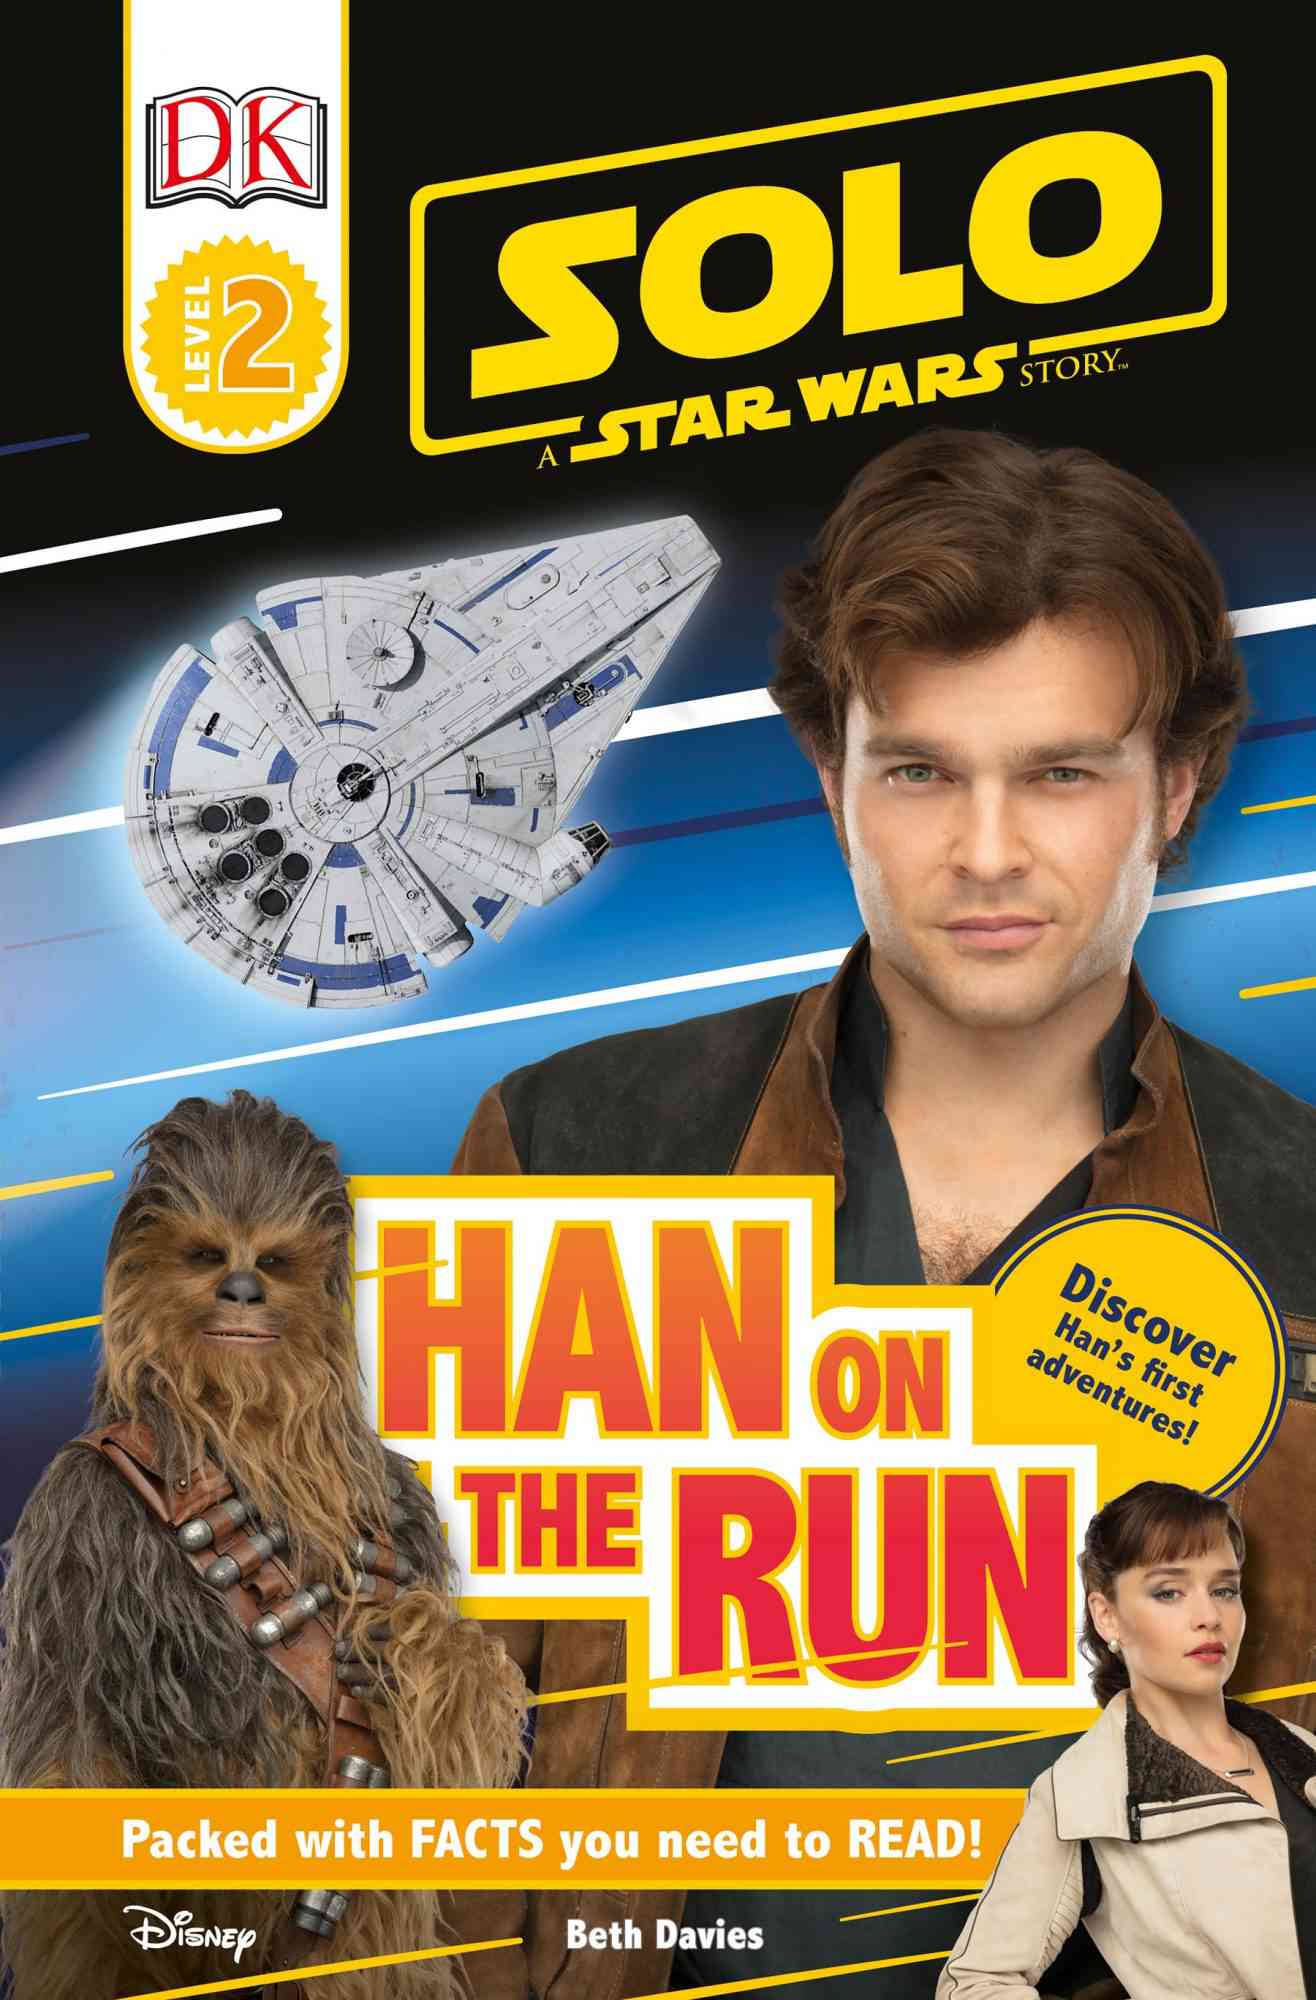 Star Wars 'Solo' Comic Books CR: Disney